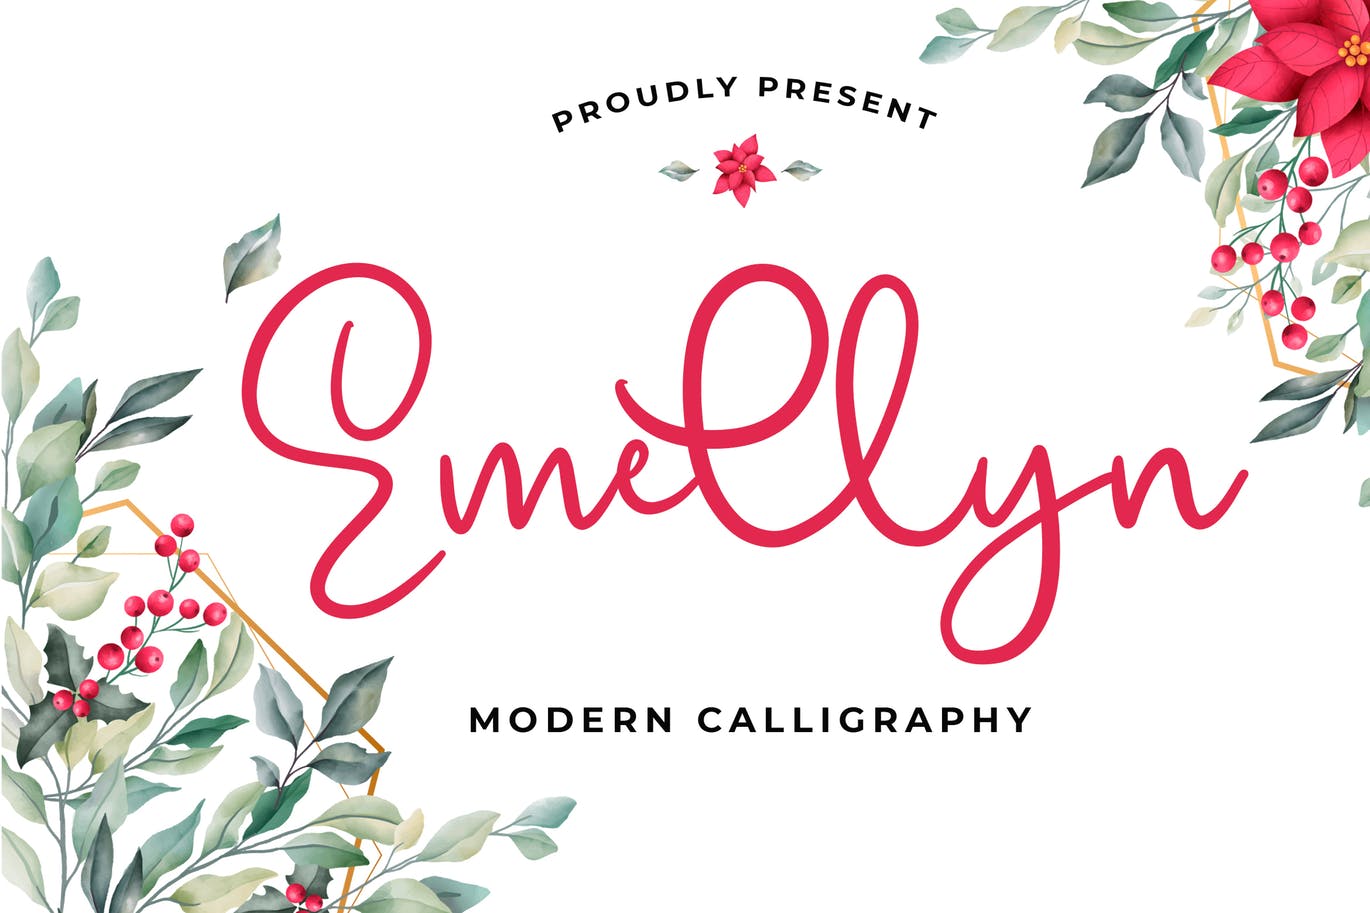 可爱风格英文现代书法字体素材库精选 Emellyn Lovely Modern Calligraphy Font插图